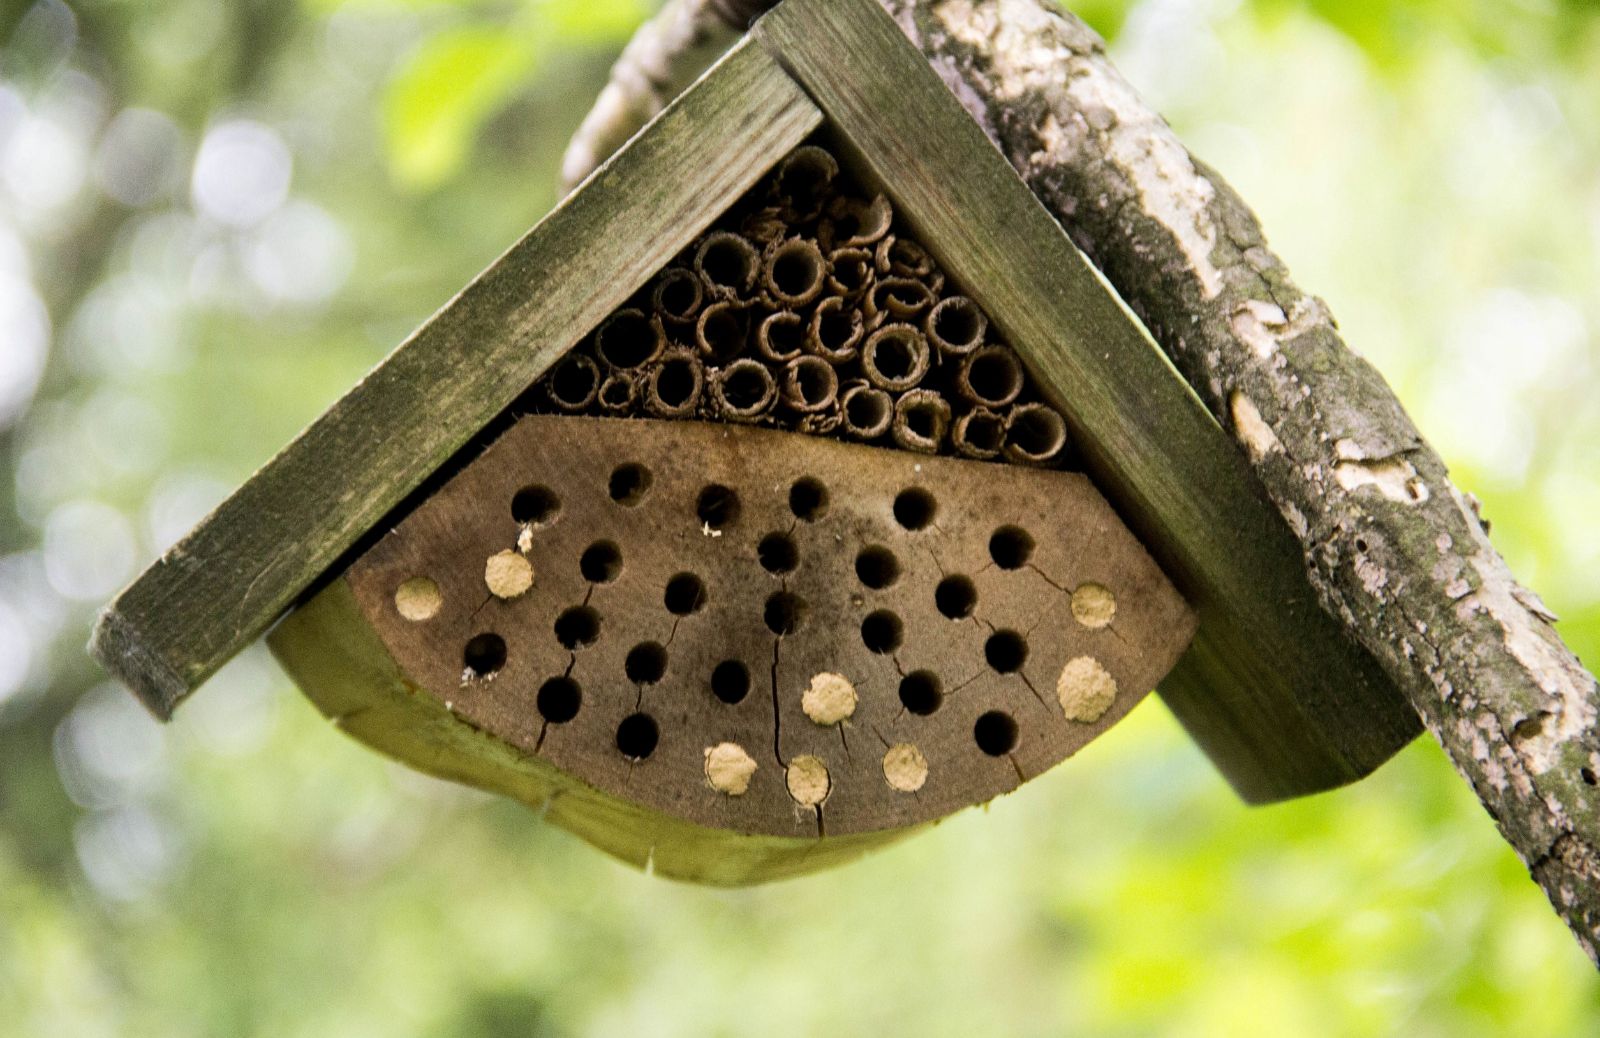 Casetta per api e insetti impollinatori: come (e perché) farla